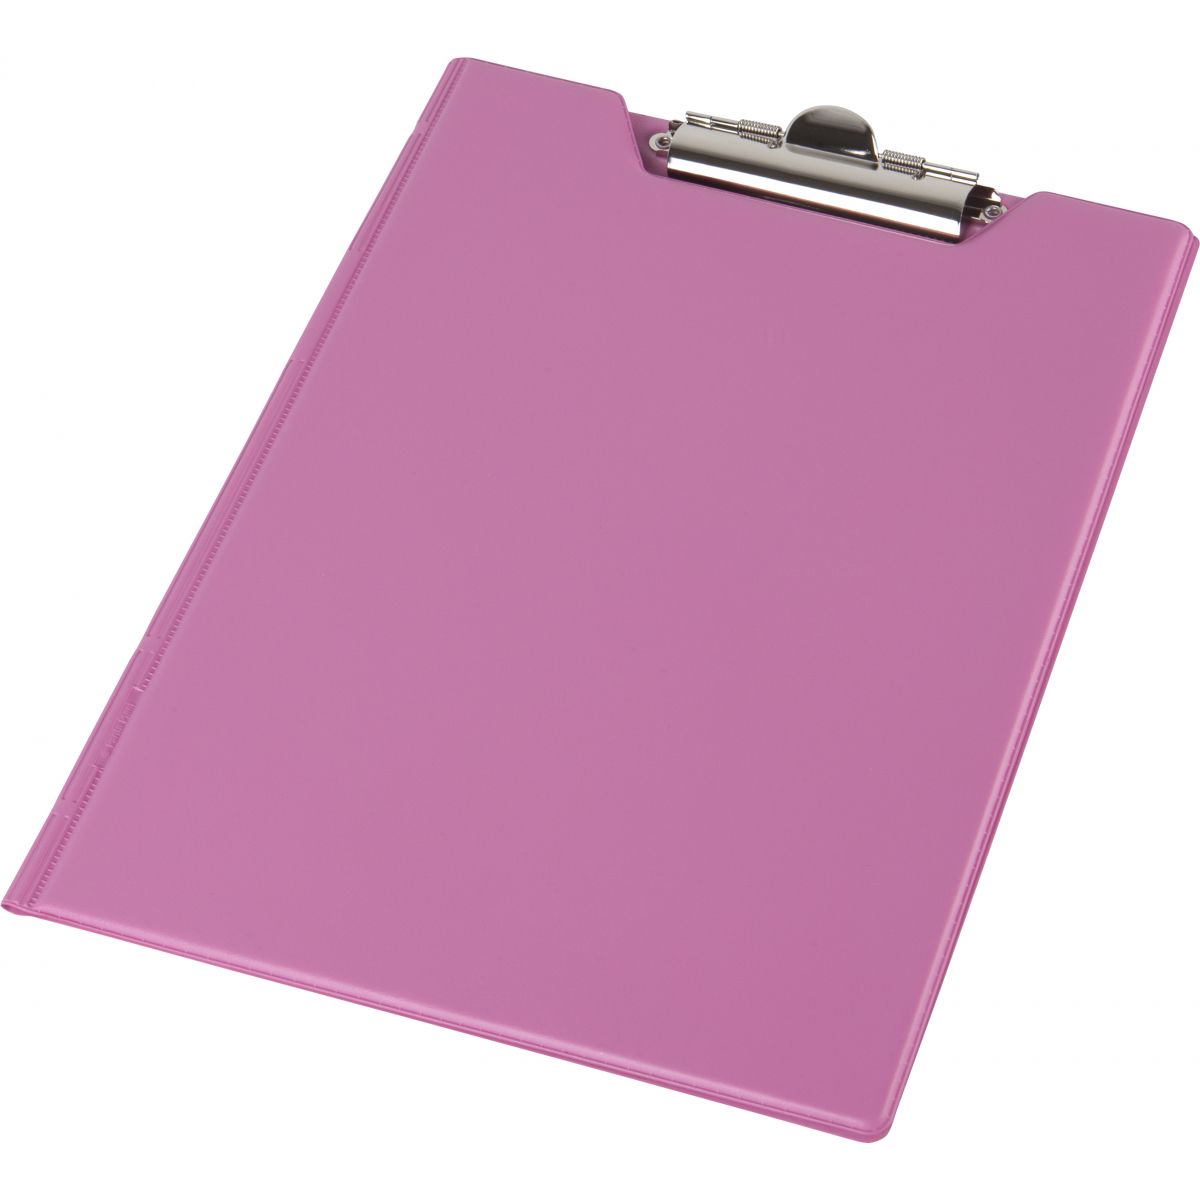 Deska z klipem (podkład do pisania) fokus pastel A5 różowa Panta Plast (0314-0005-29)